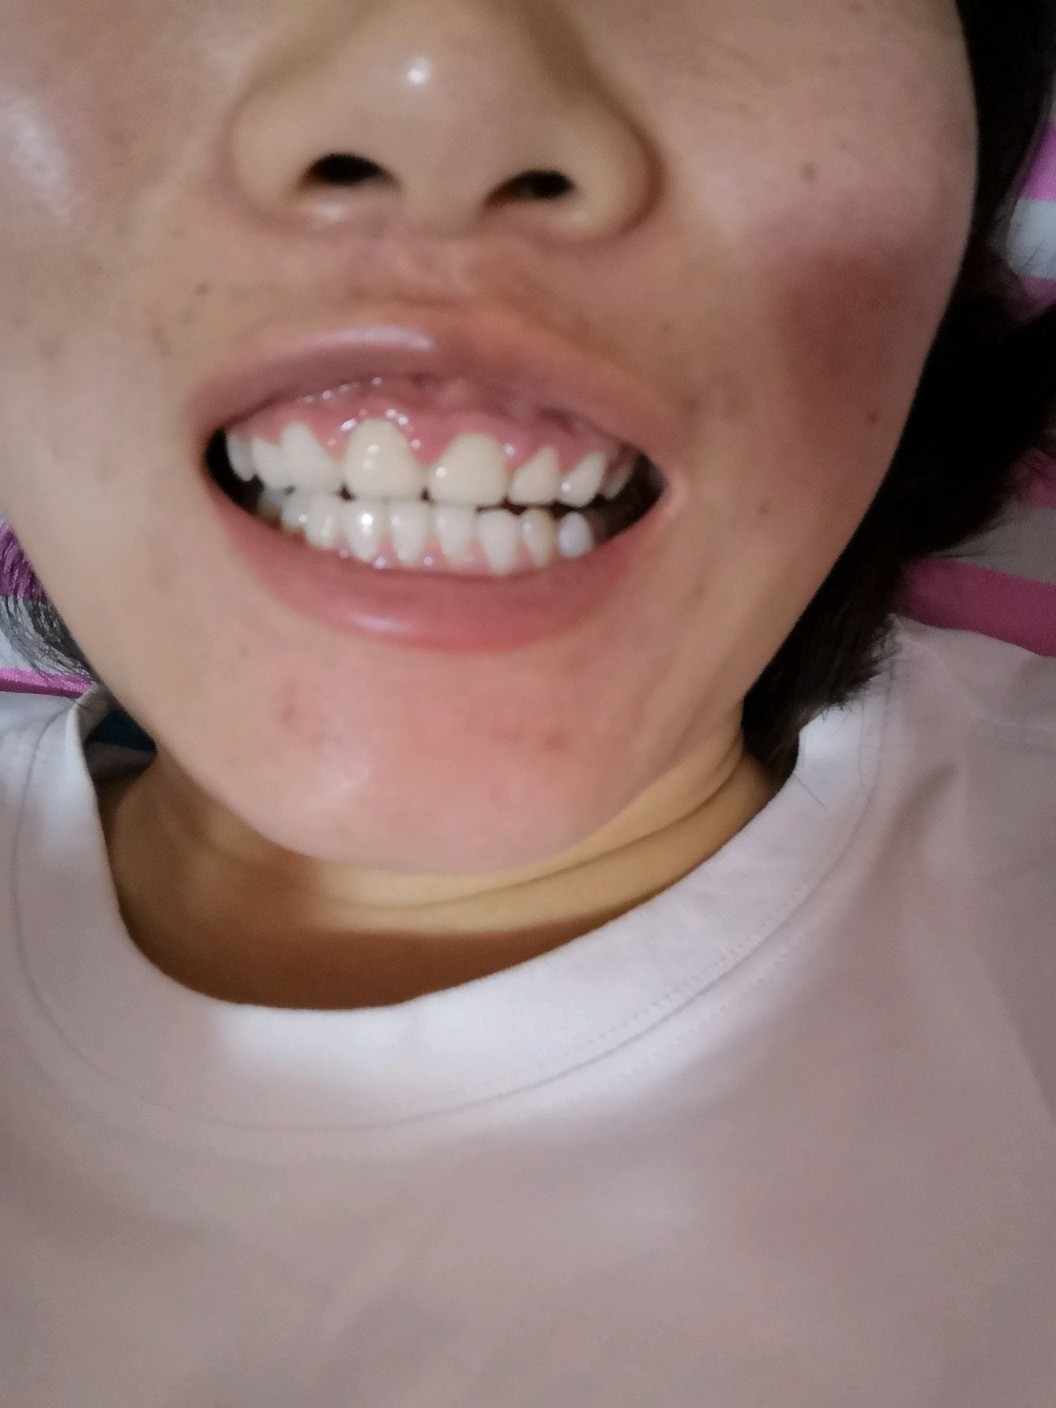 生活 生活美容  我是做的全瓷牙  四五个月后,做全瓷牙的牙龈都肿了